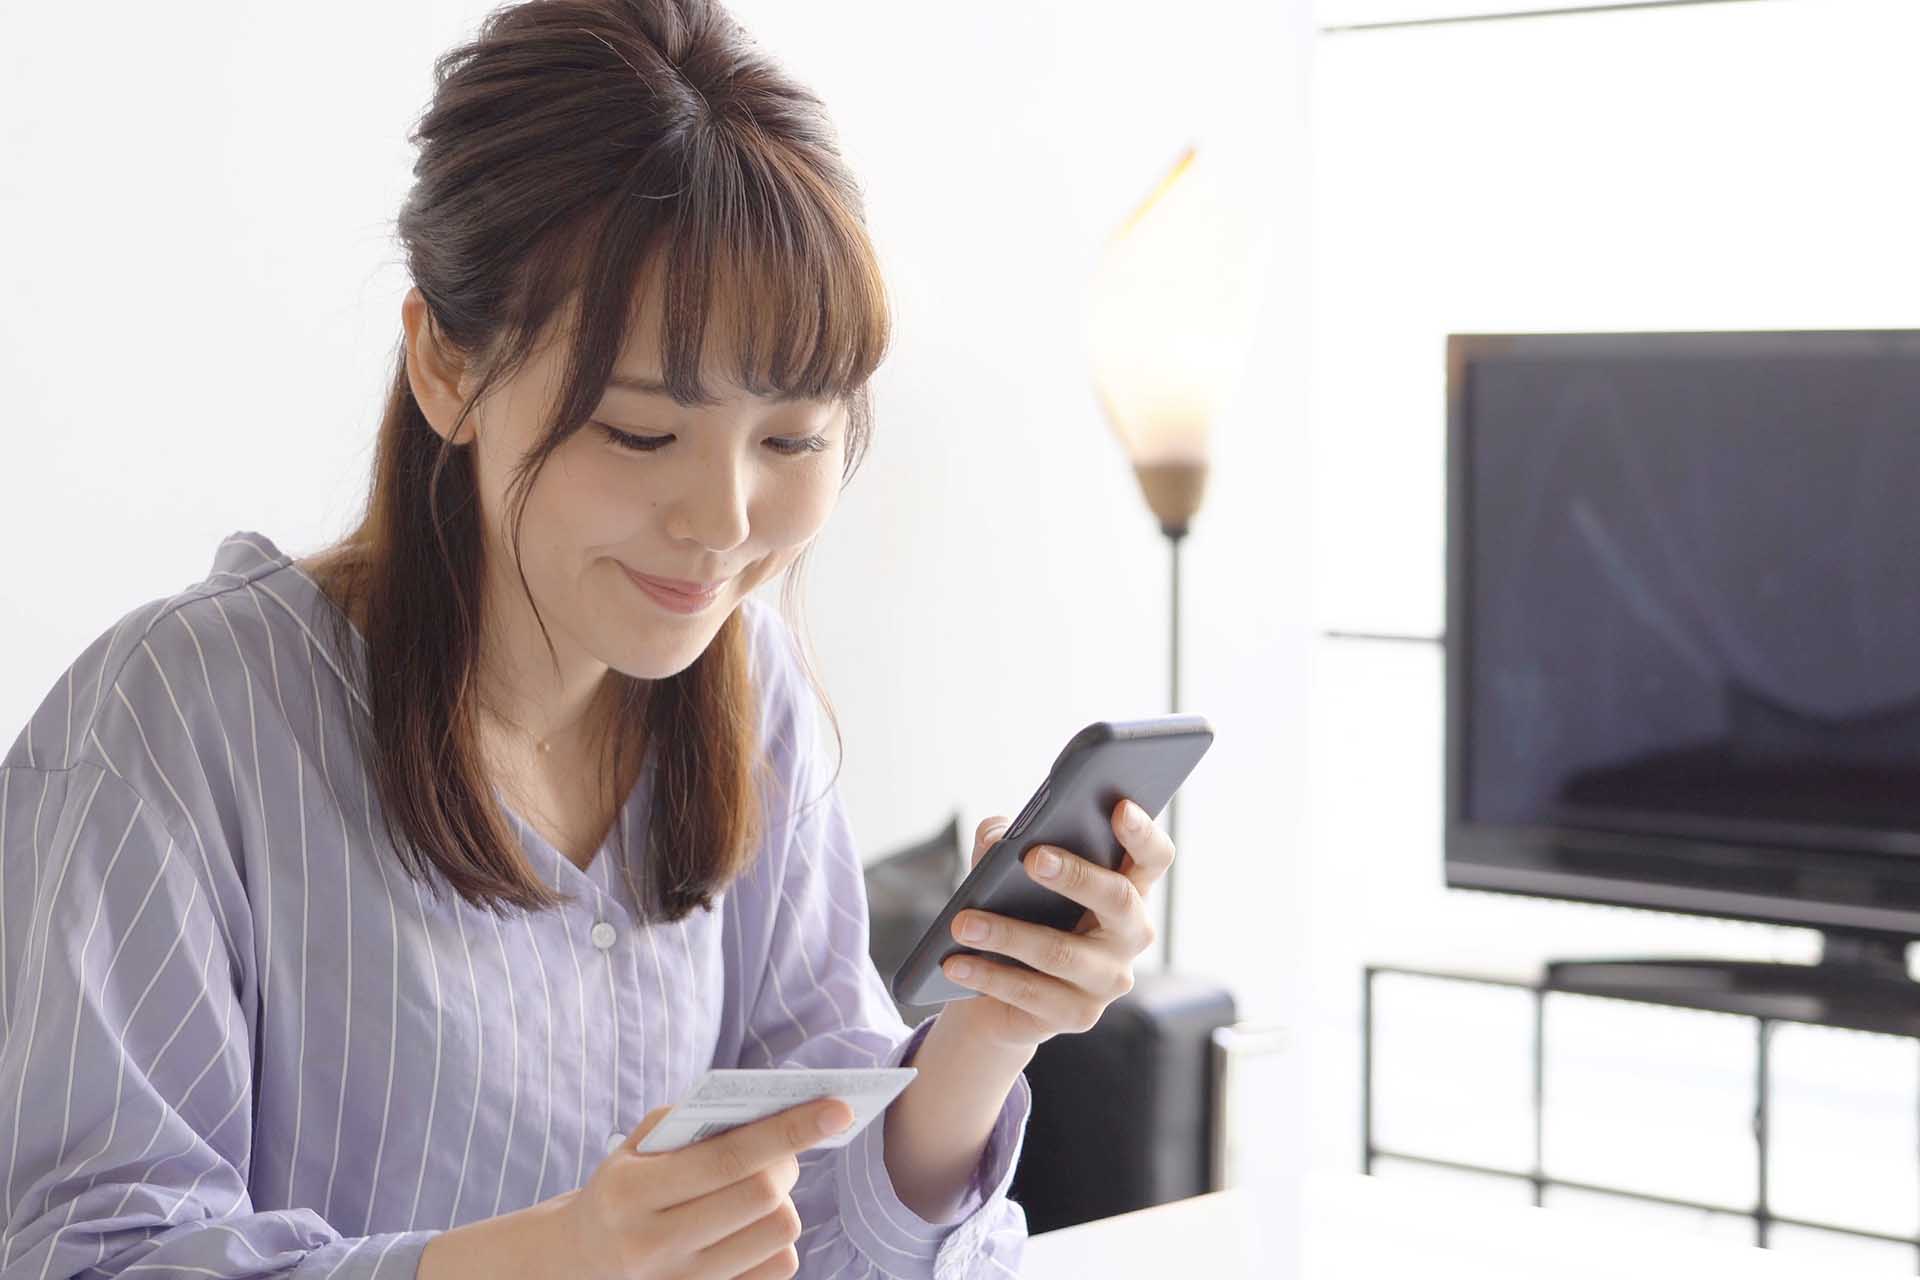 Japanese online shopper - Digital Marketing For Asia